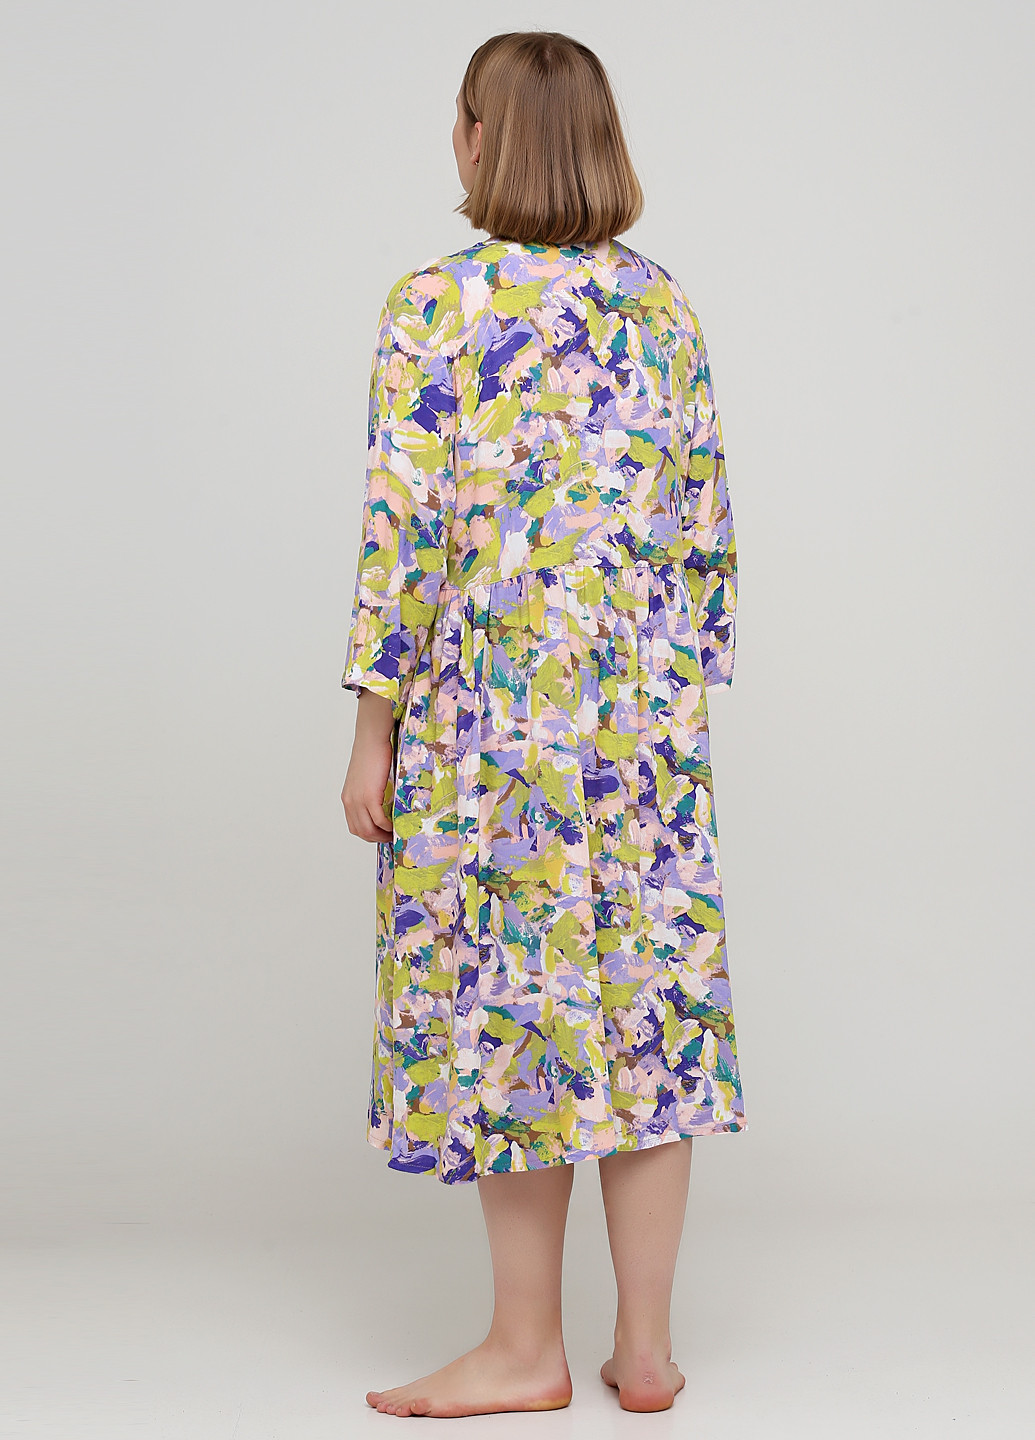 Сиреневое домашнее платье оверсайз Juliet deluxe с абстрактным узором